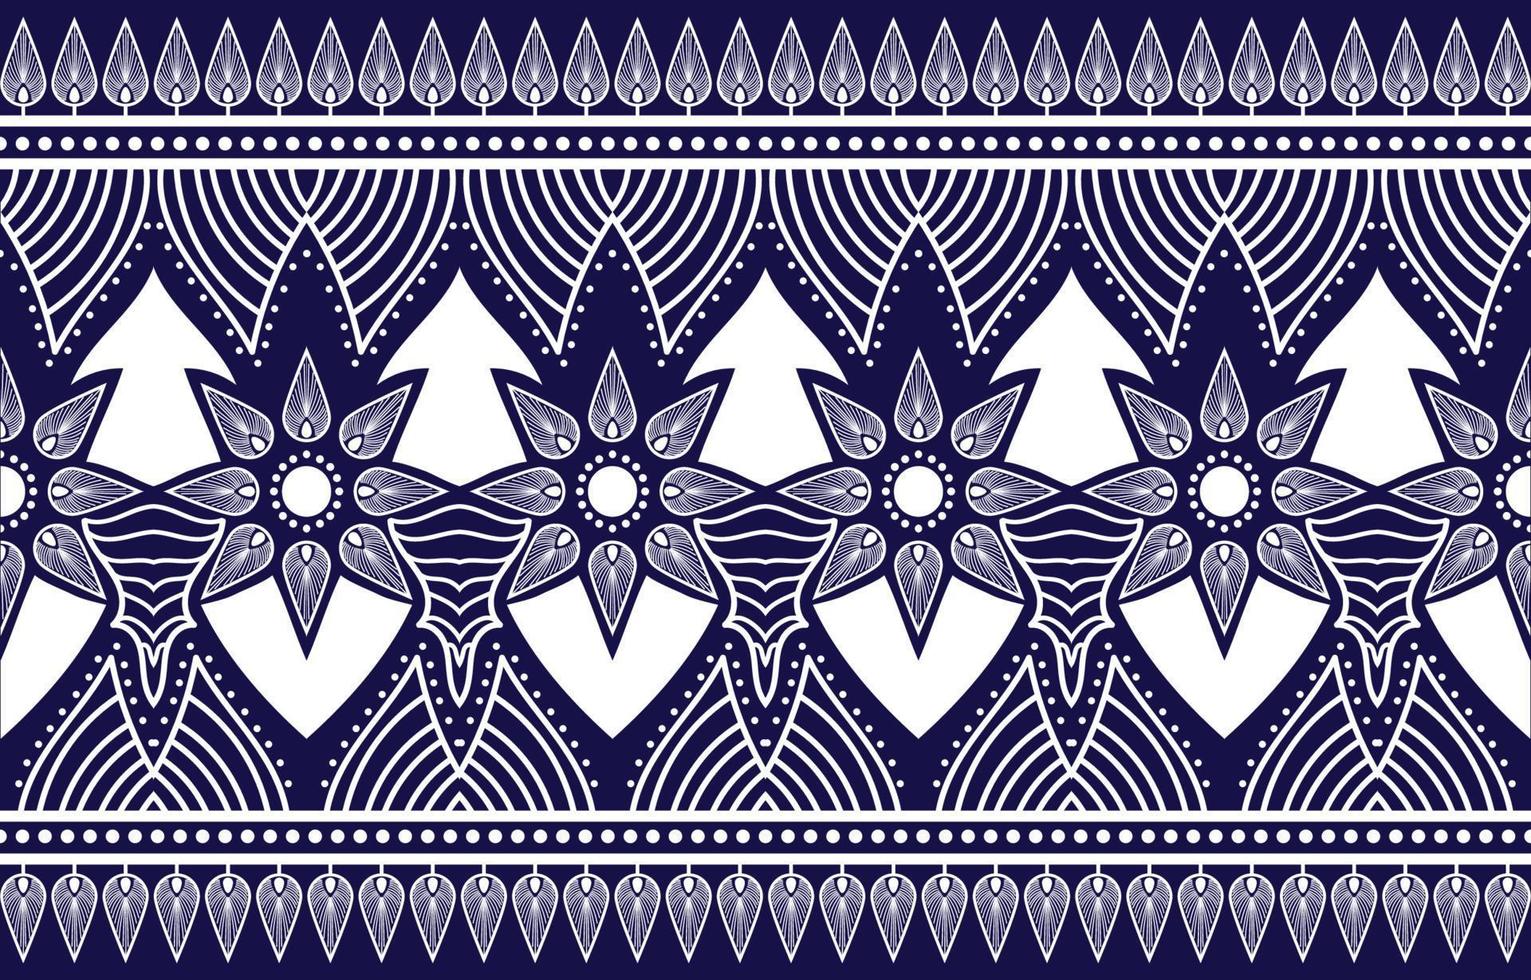 dekorativ abstrakt geometrisk etnisk orientalisk med blommönster traditionell, abstrakt bakgrundsdesign för matta, tapeter, kläder, inslagning, batik, tyg, traditionell tryckvektor vektor